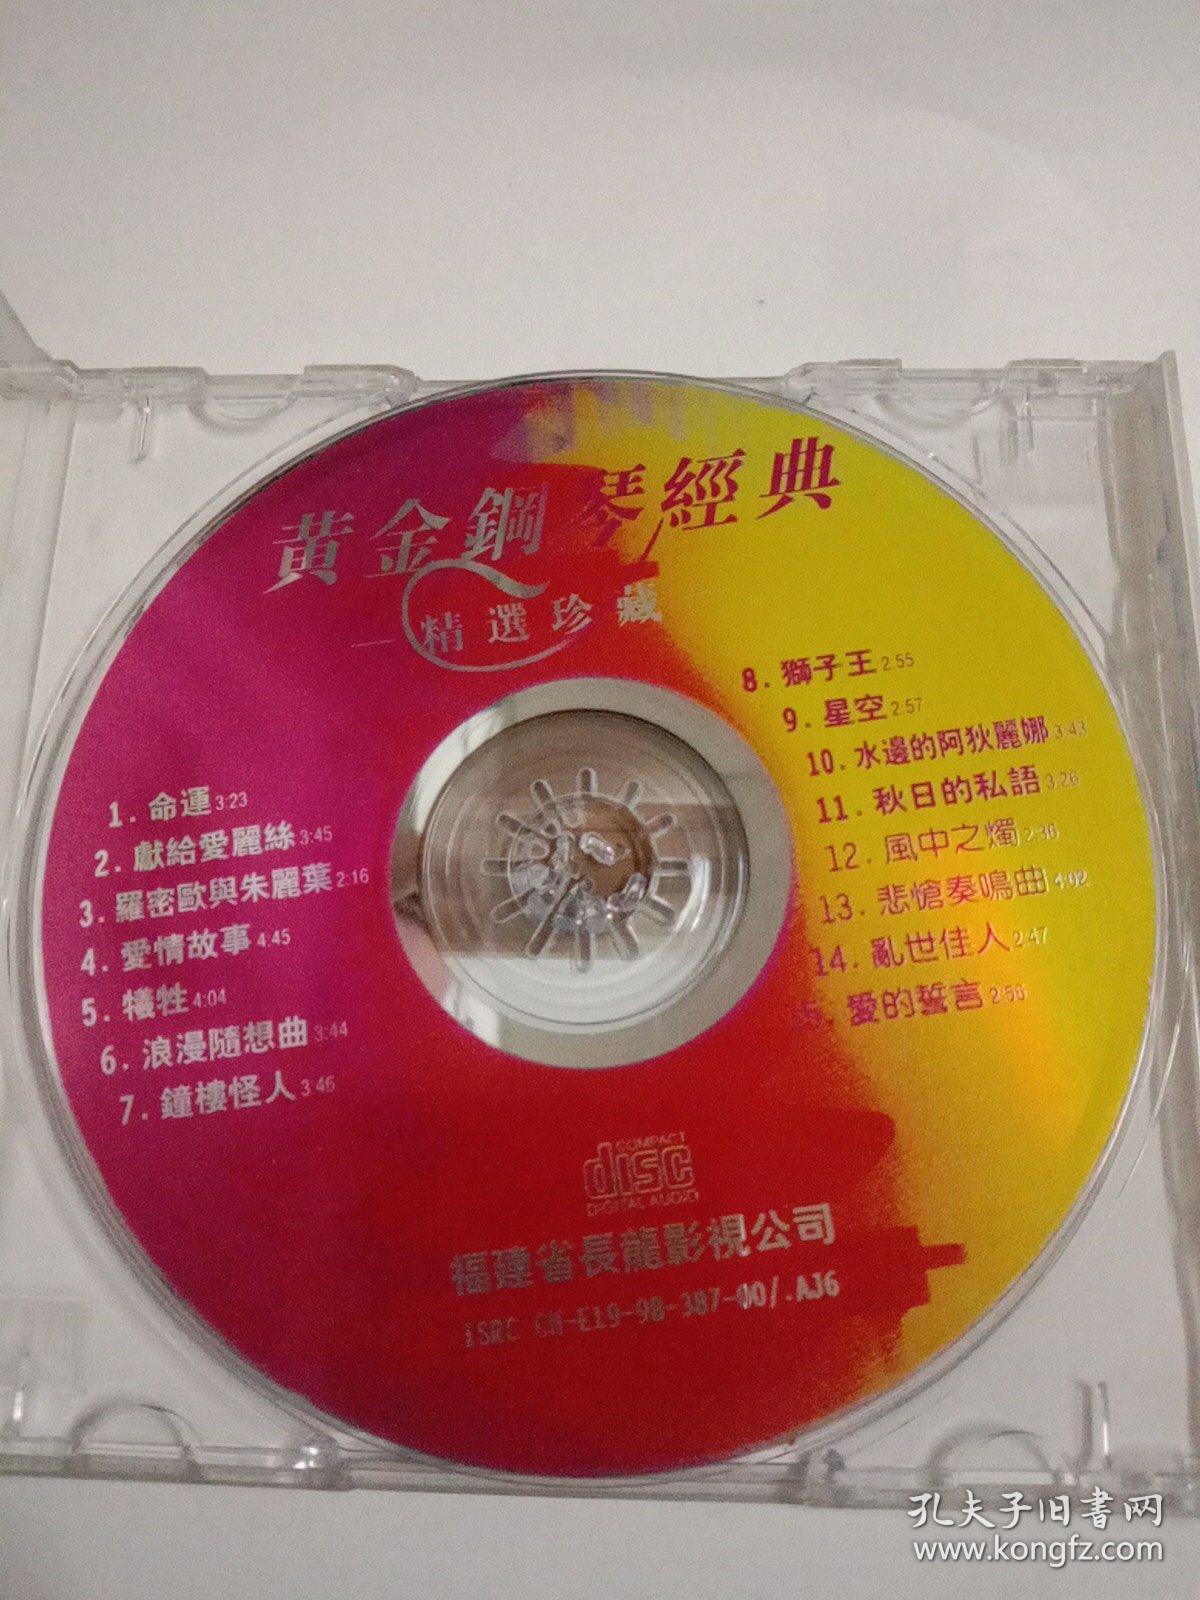 经典钢琴曲—命运 星空 黄金钢琴经典—CD